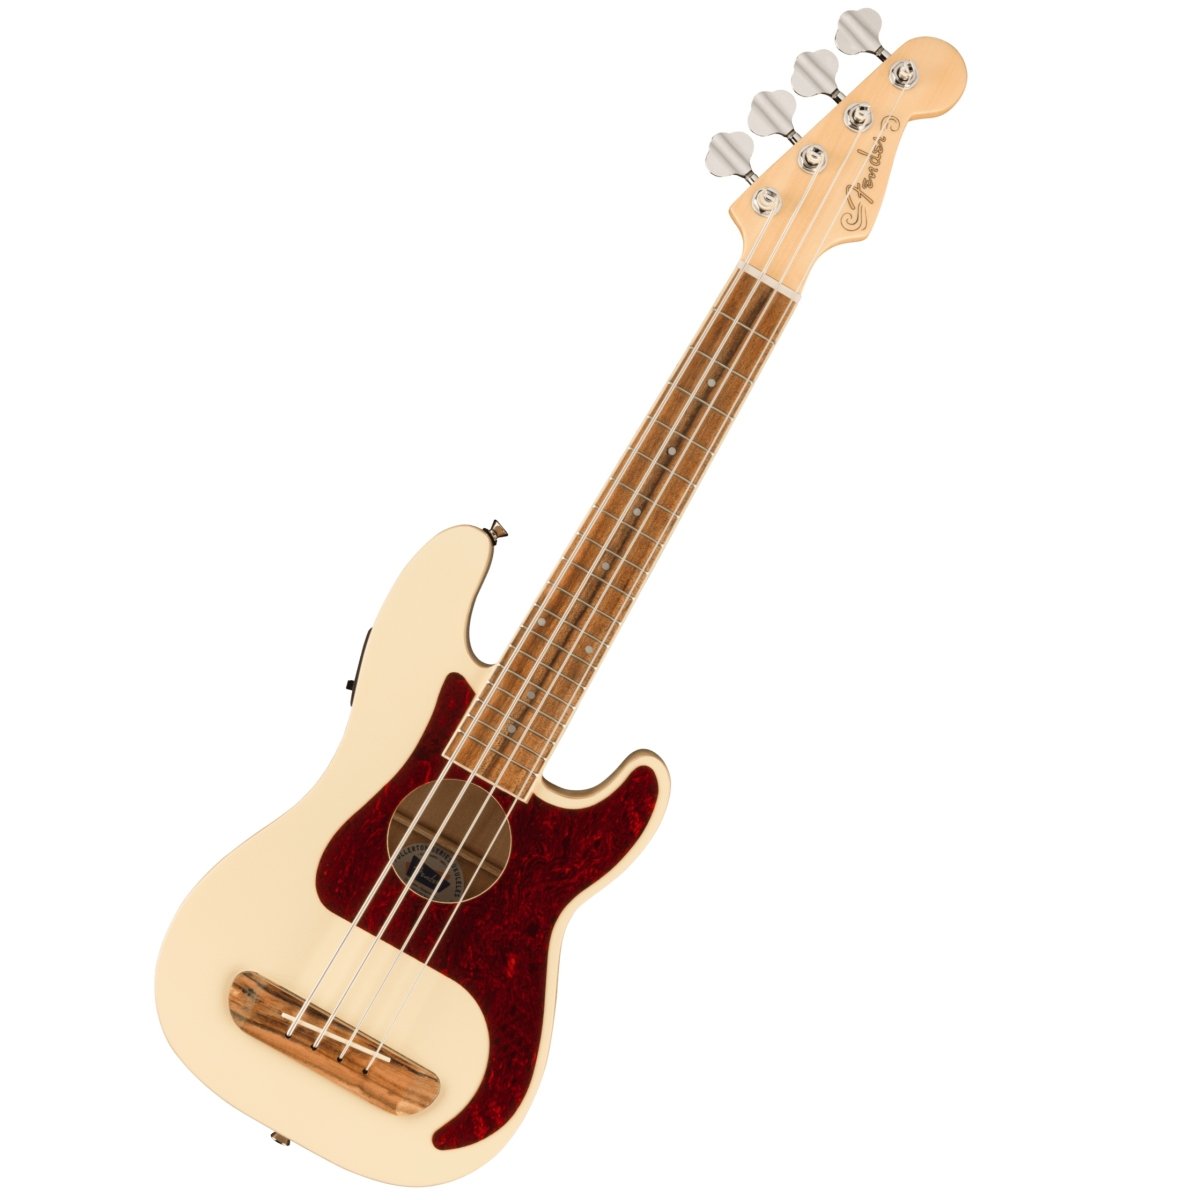 Fender / Fullerton Precision Bass Uke Walnut Fingerboard Tortoiseshell Pickguard Olympic White フェンダー ウクレレ【池袋店】